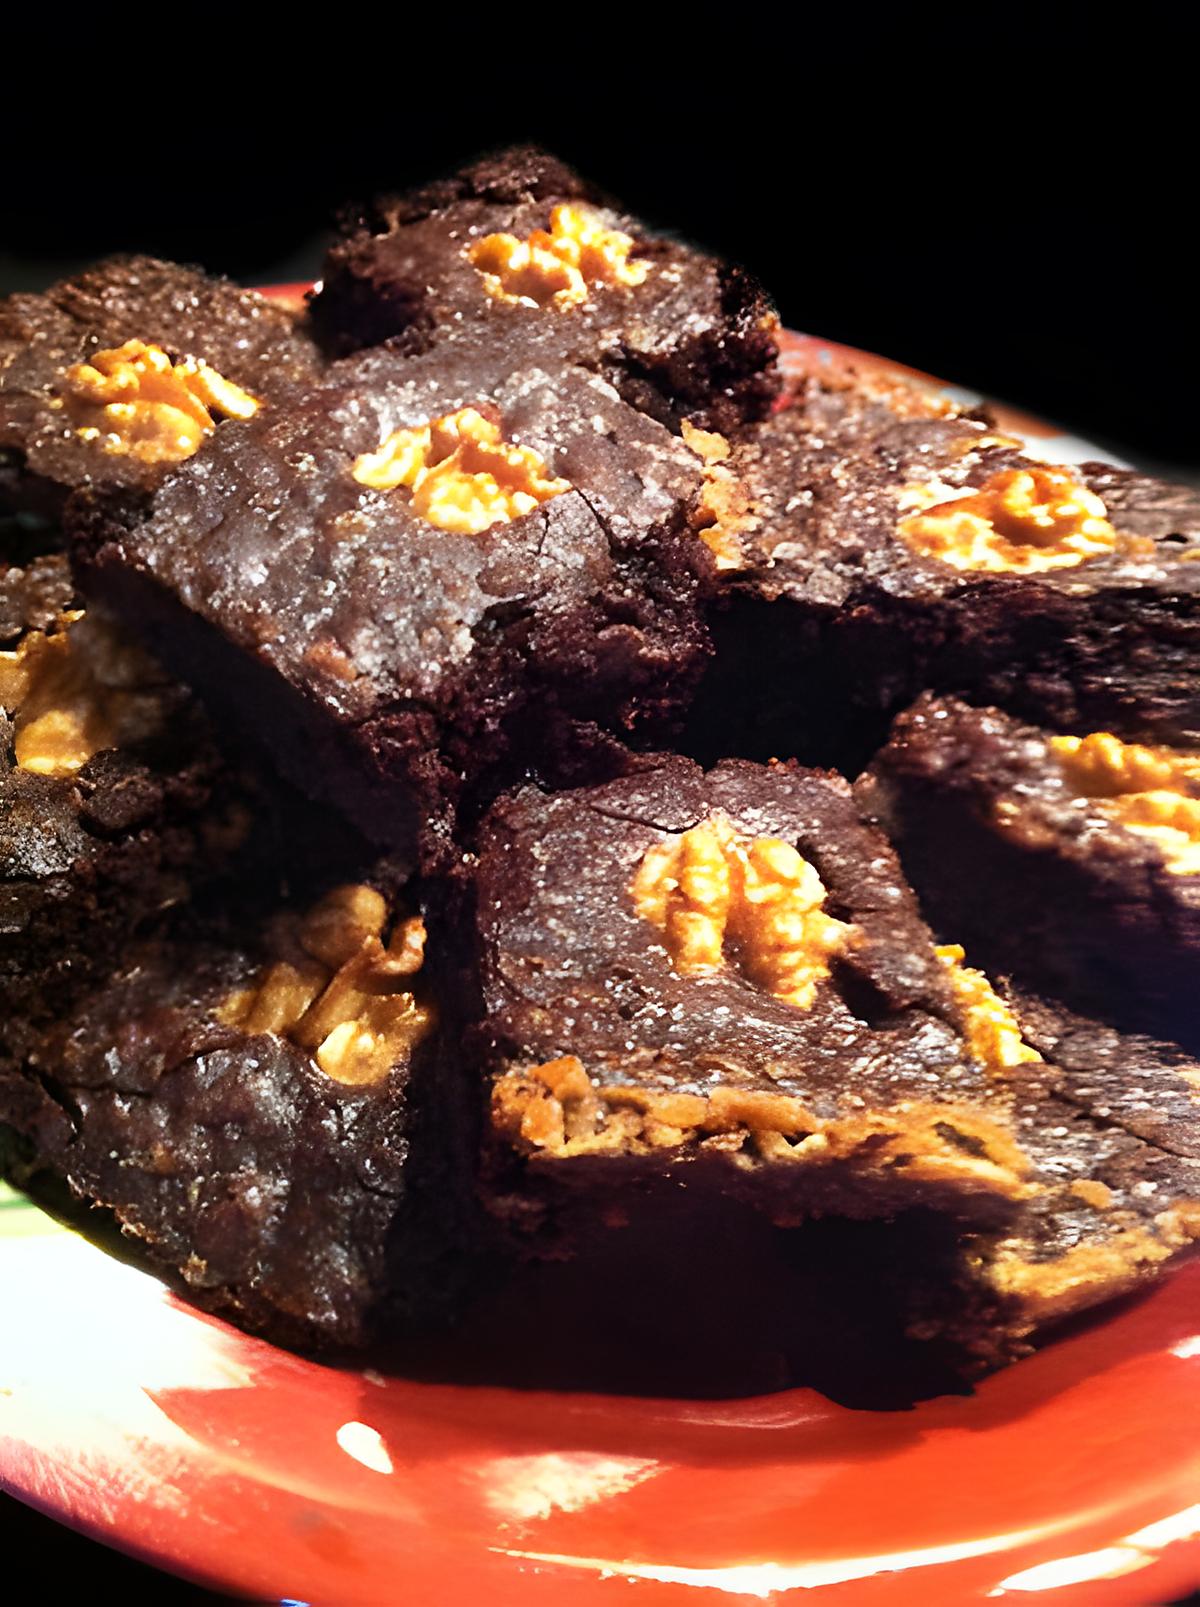 recette A la recherche du Saint GRA.... Brownies !